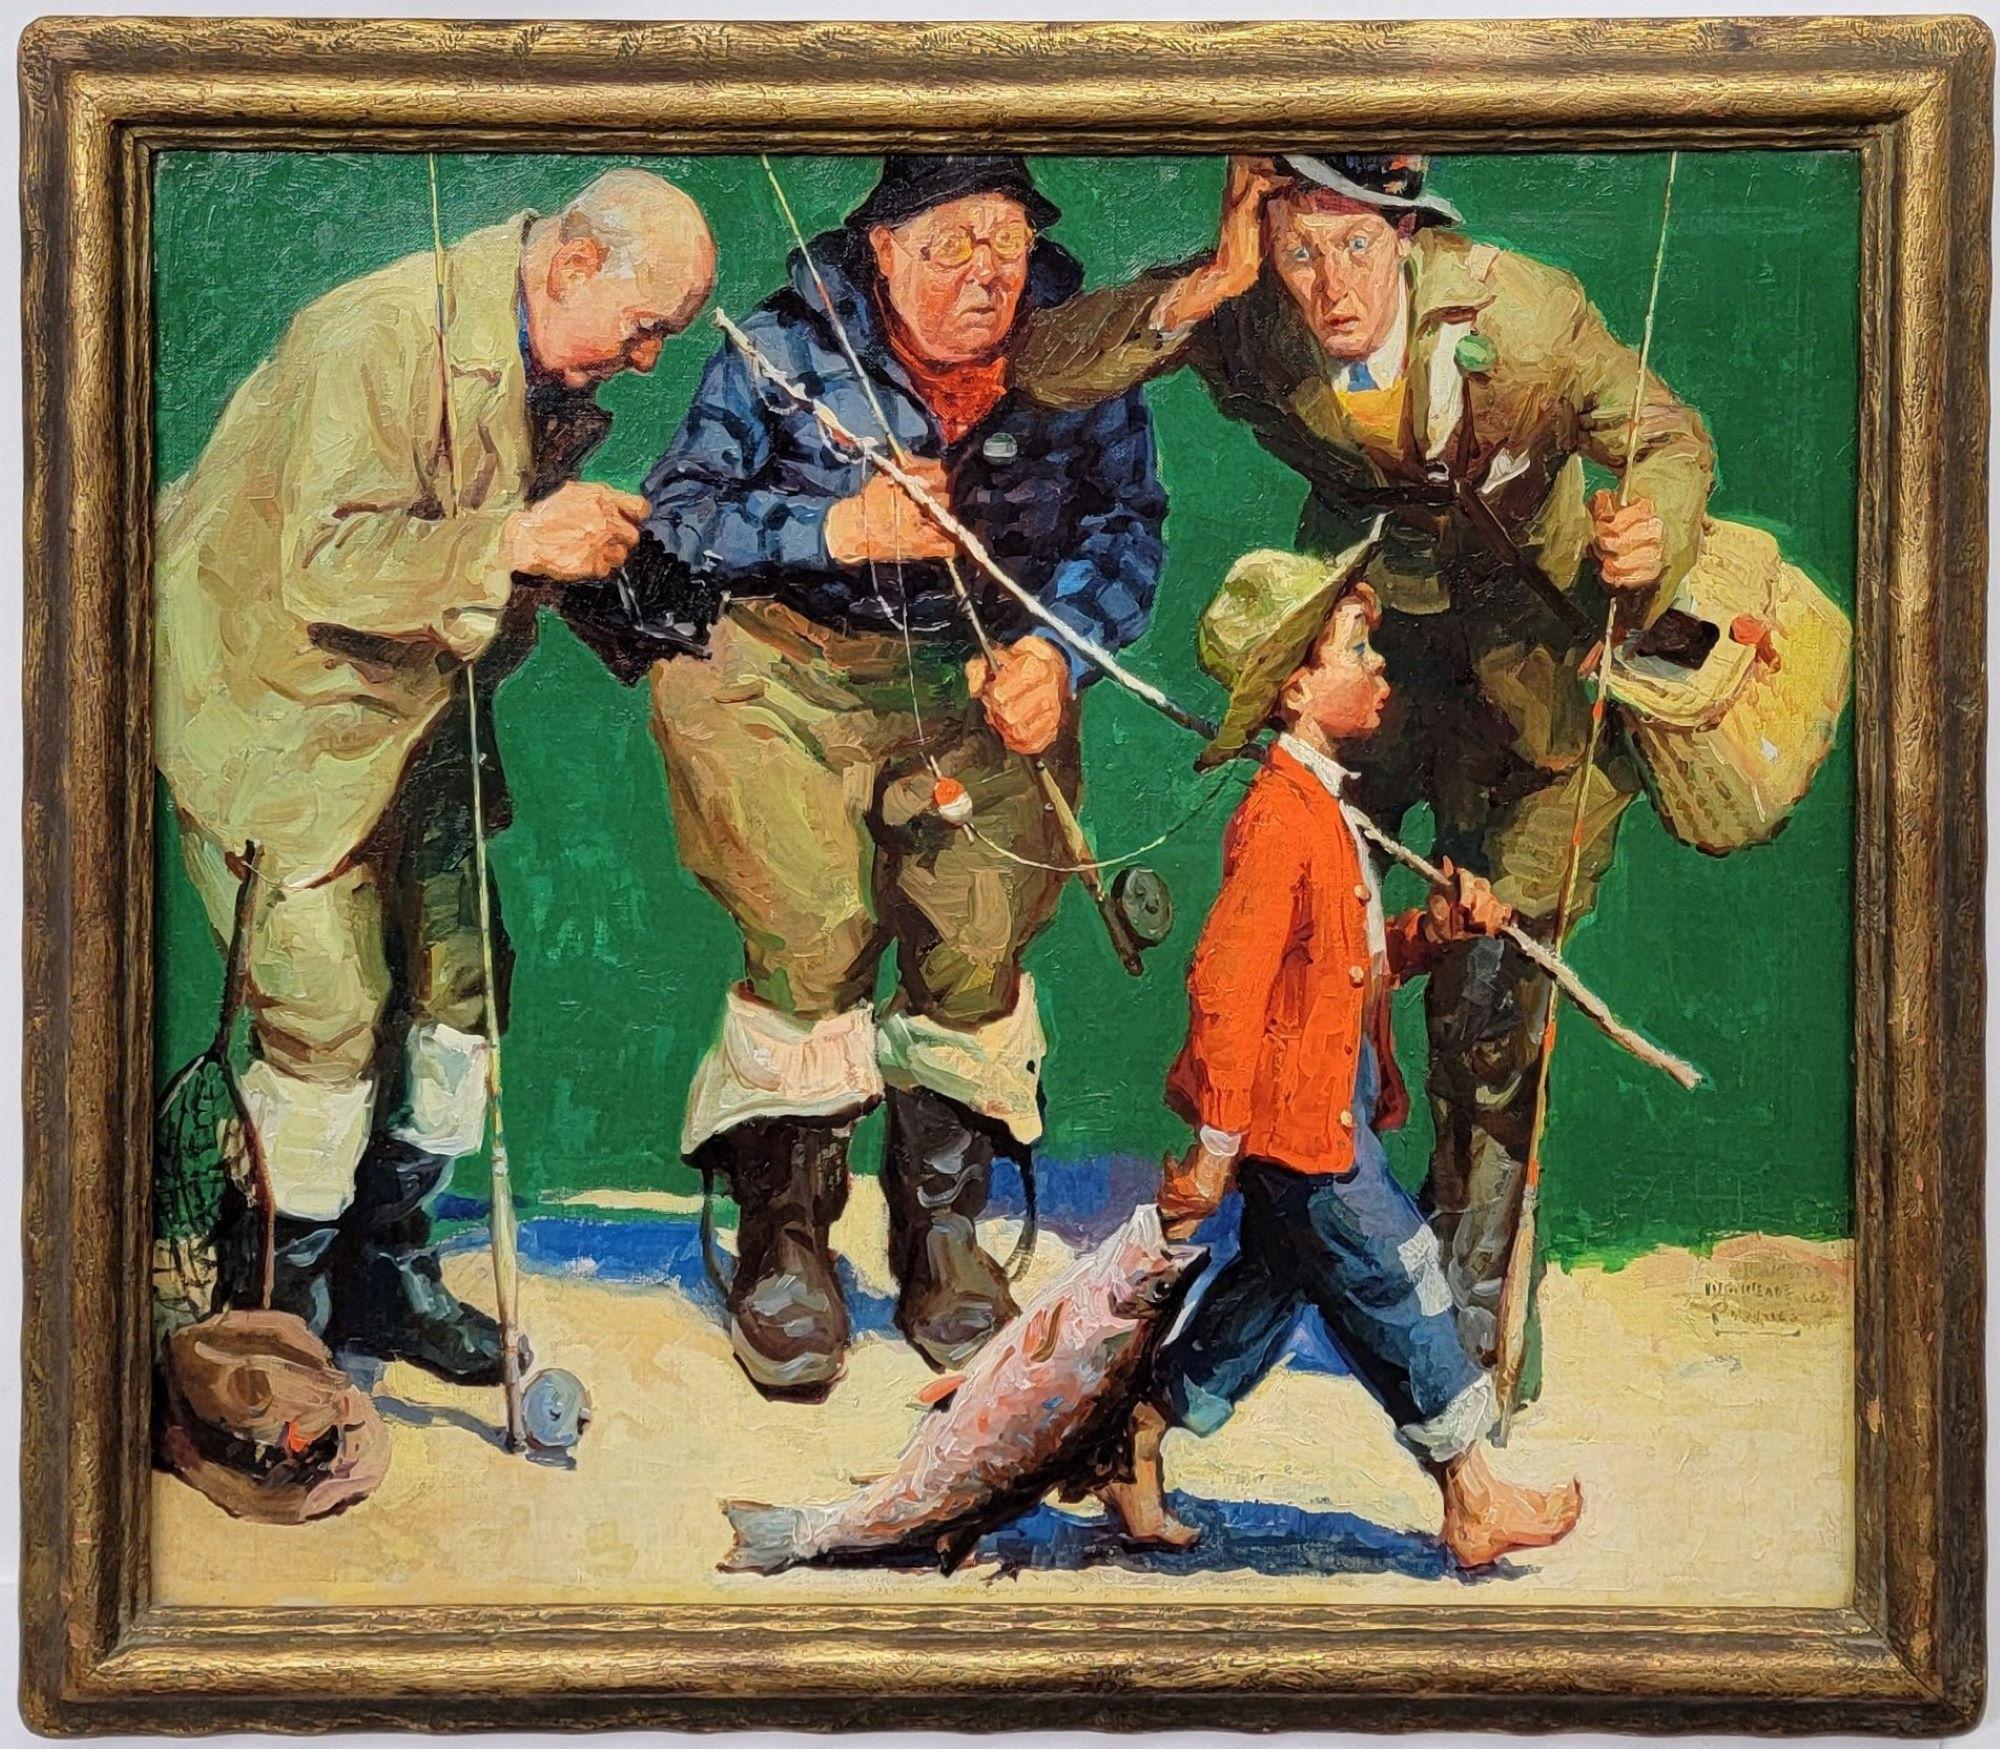 Animal Painting William Meade Prince - Fishing au mât de canne, couverture de magazine d'origine, illustration américaine, sport